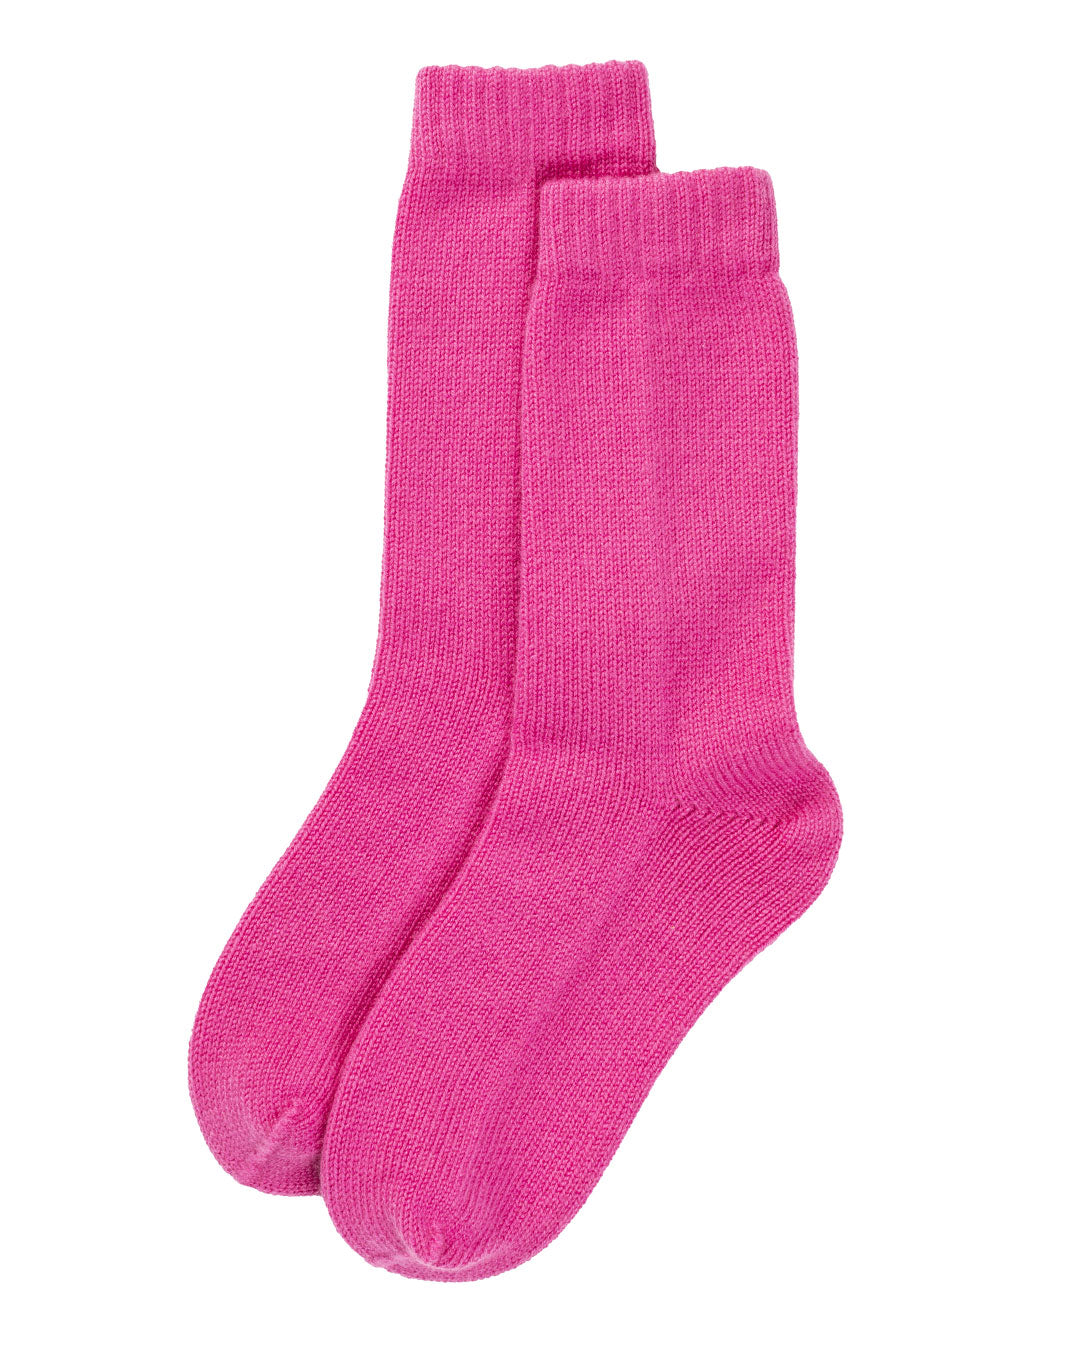 Women's Rib Knit Cashmere Socks